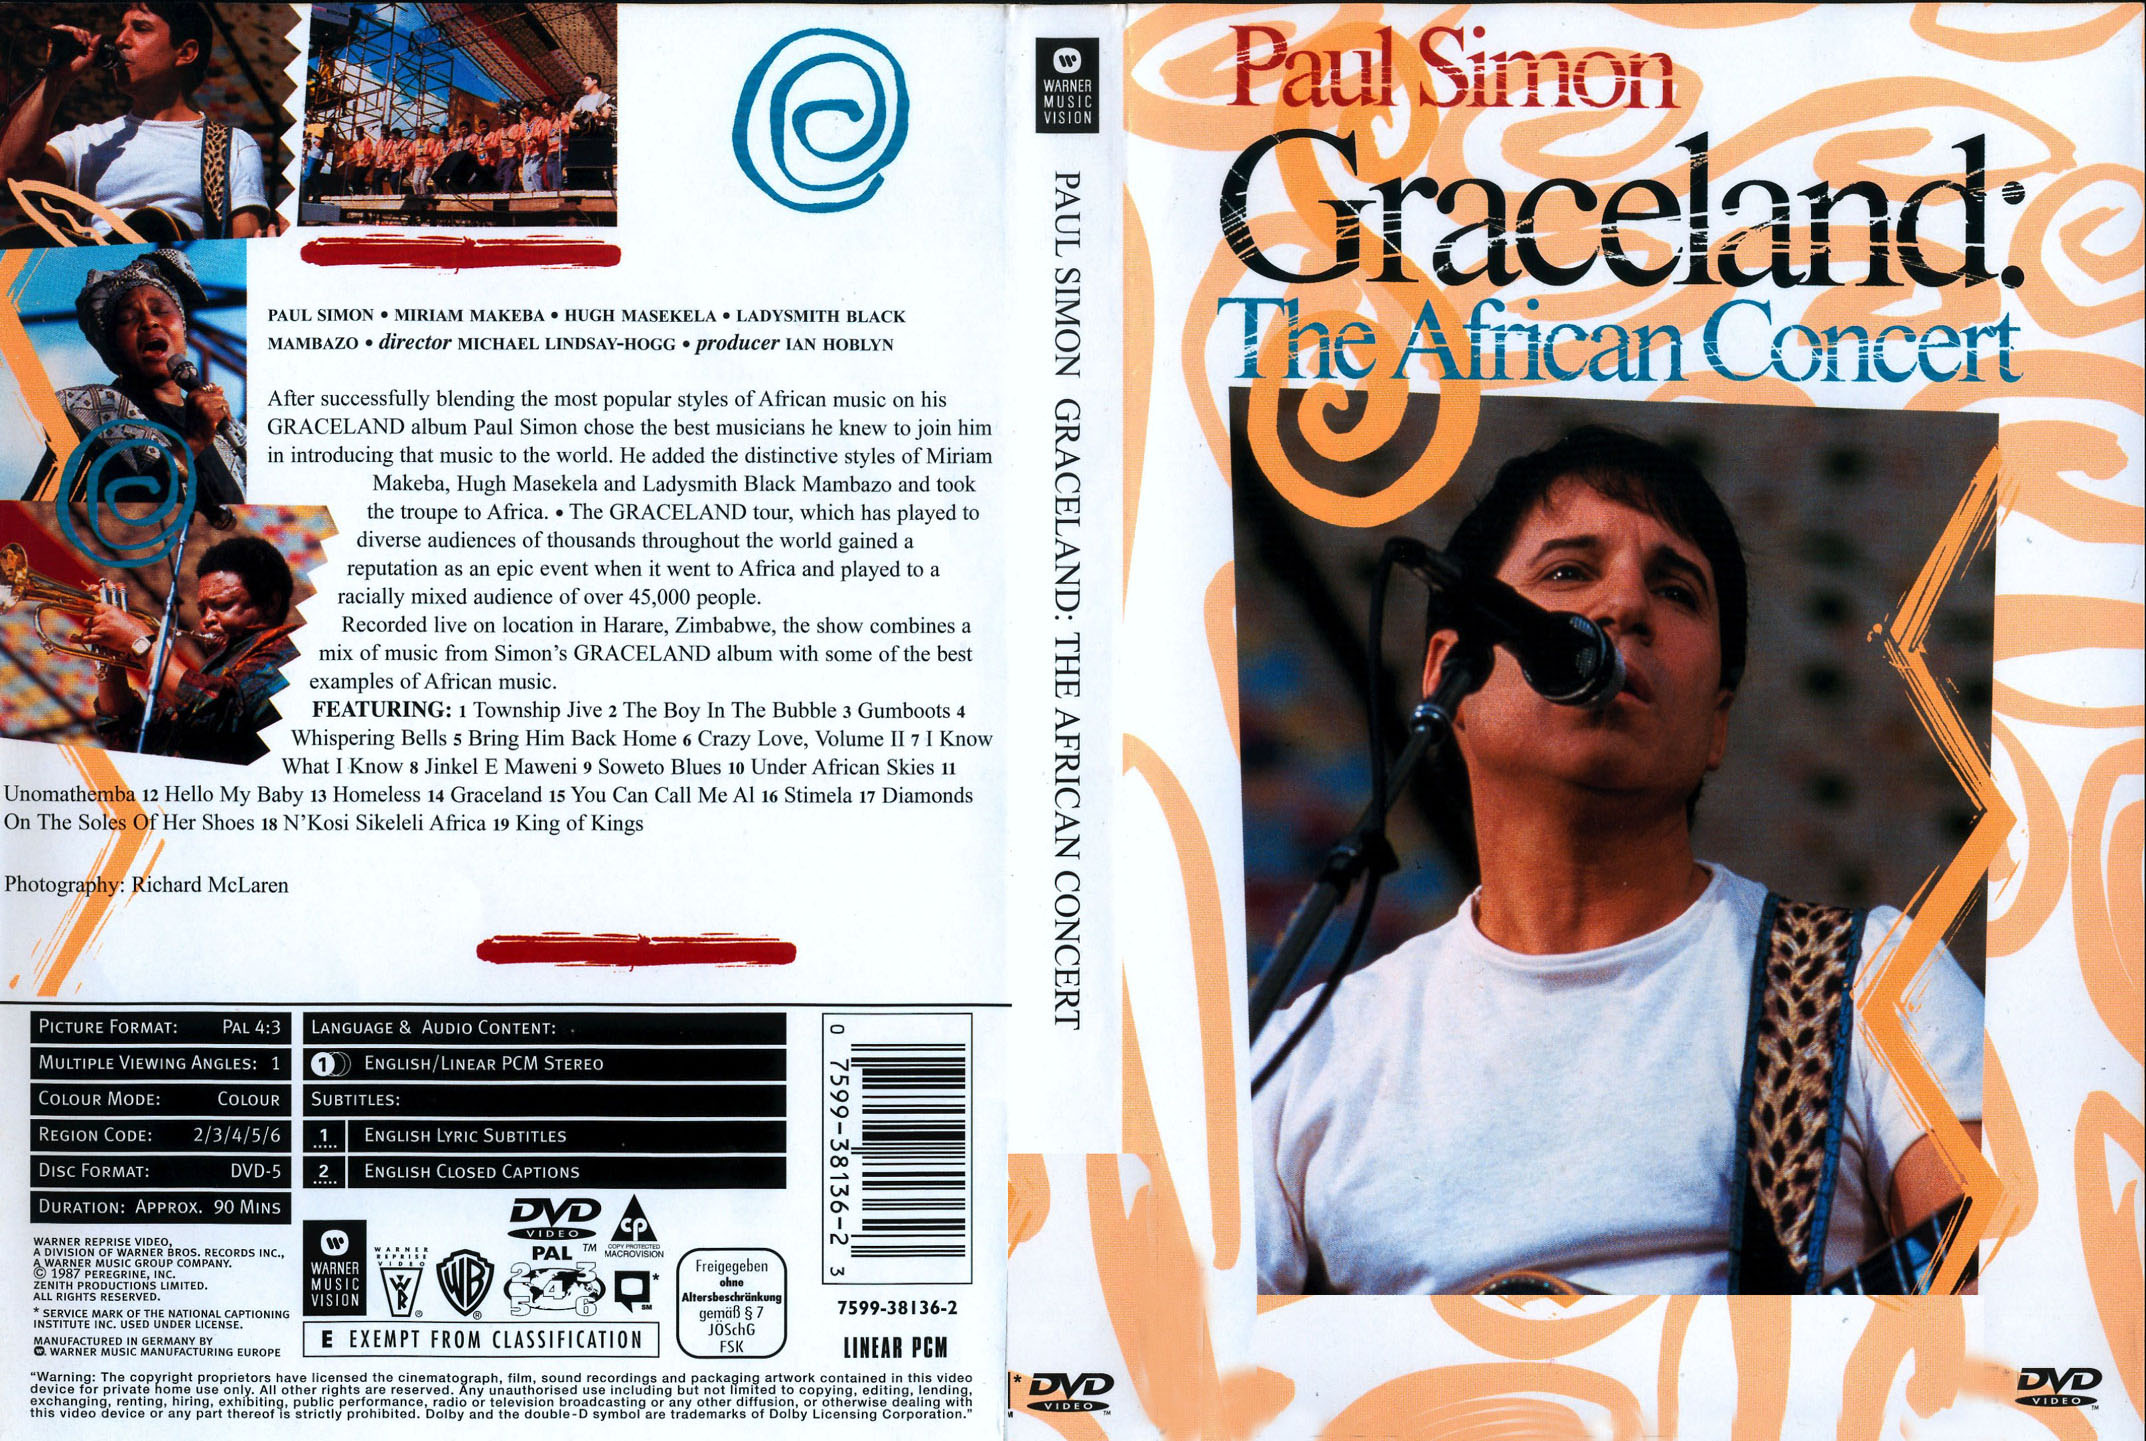 Jaquette DVD Paul Simon Graceland the african concert